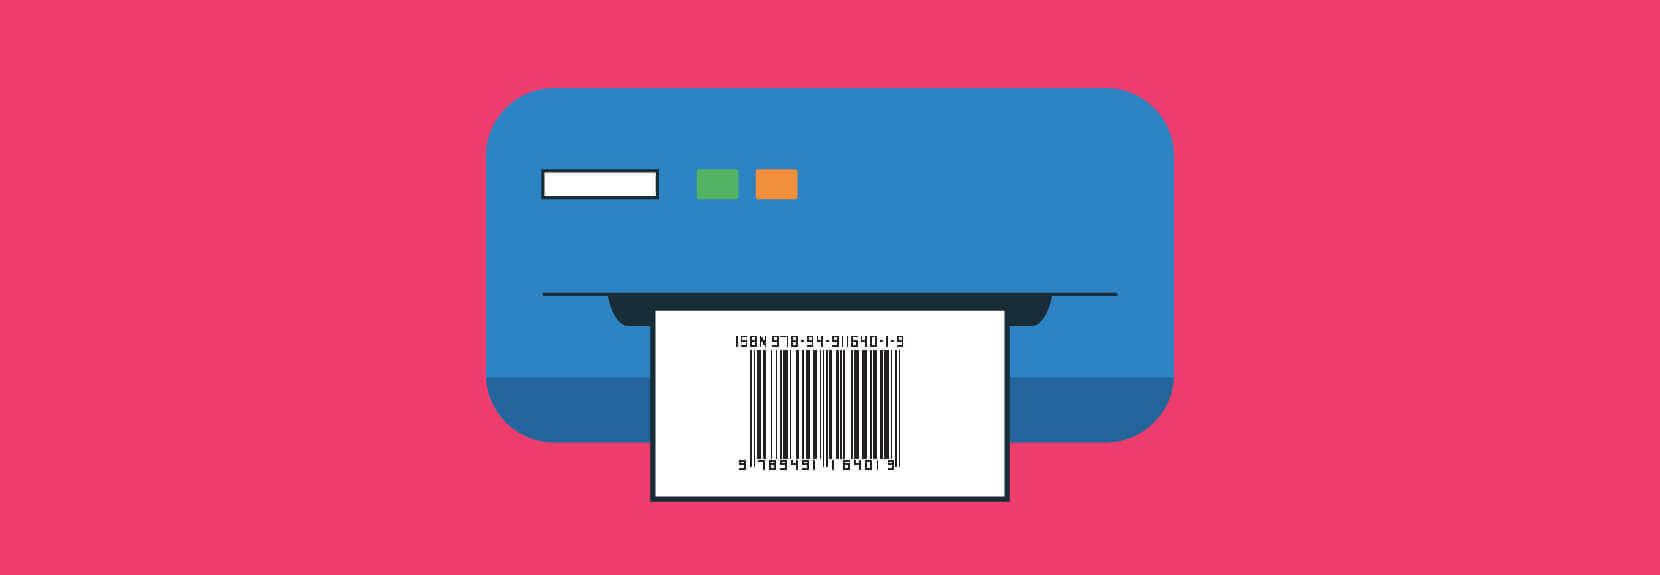 barcode-generator-1